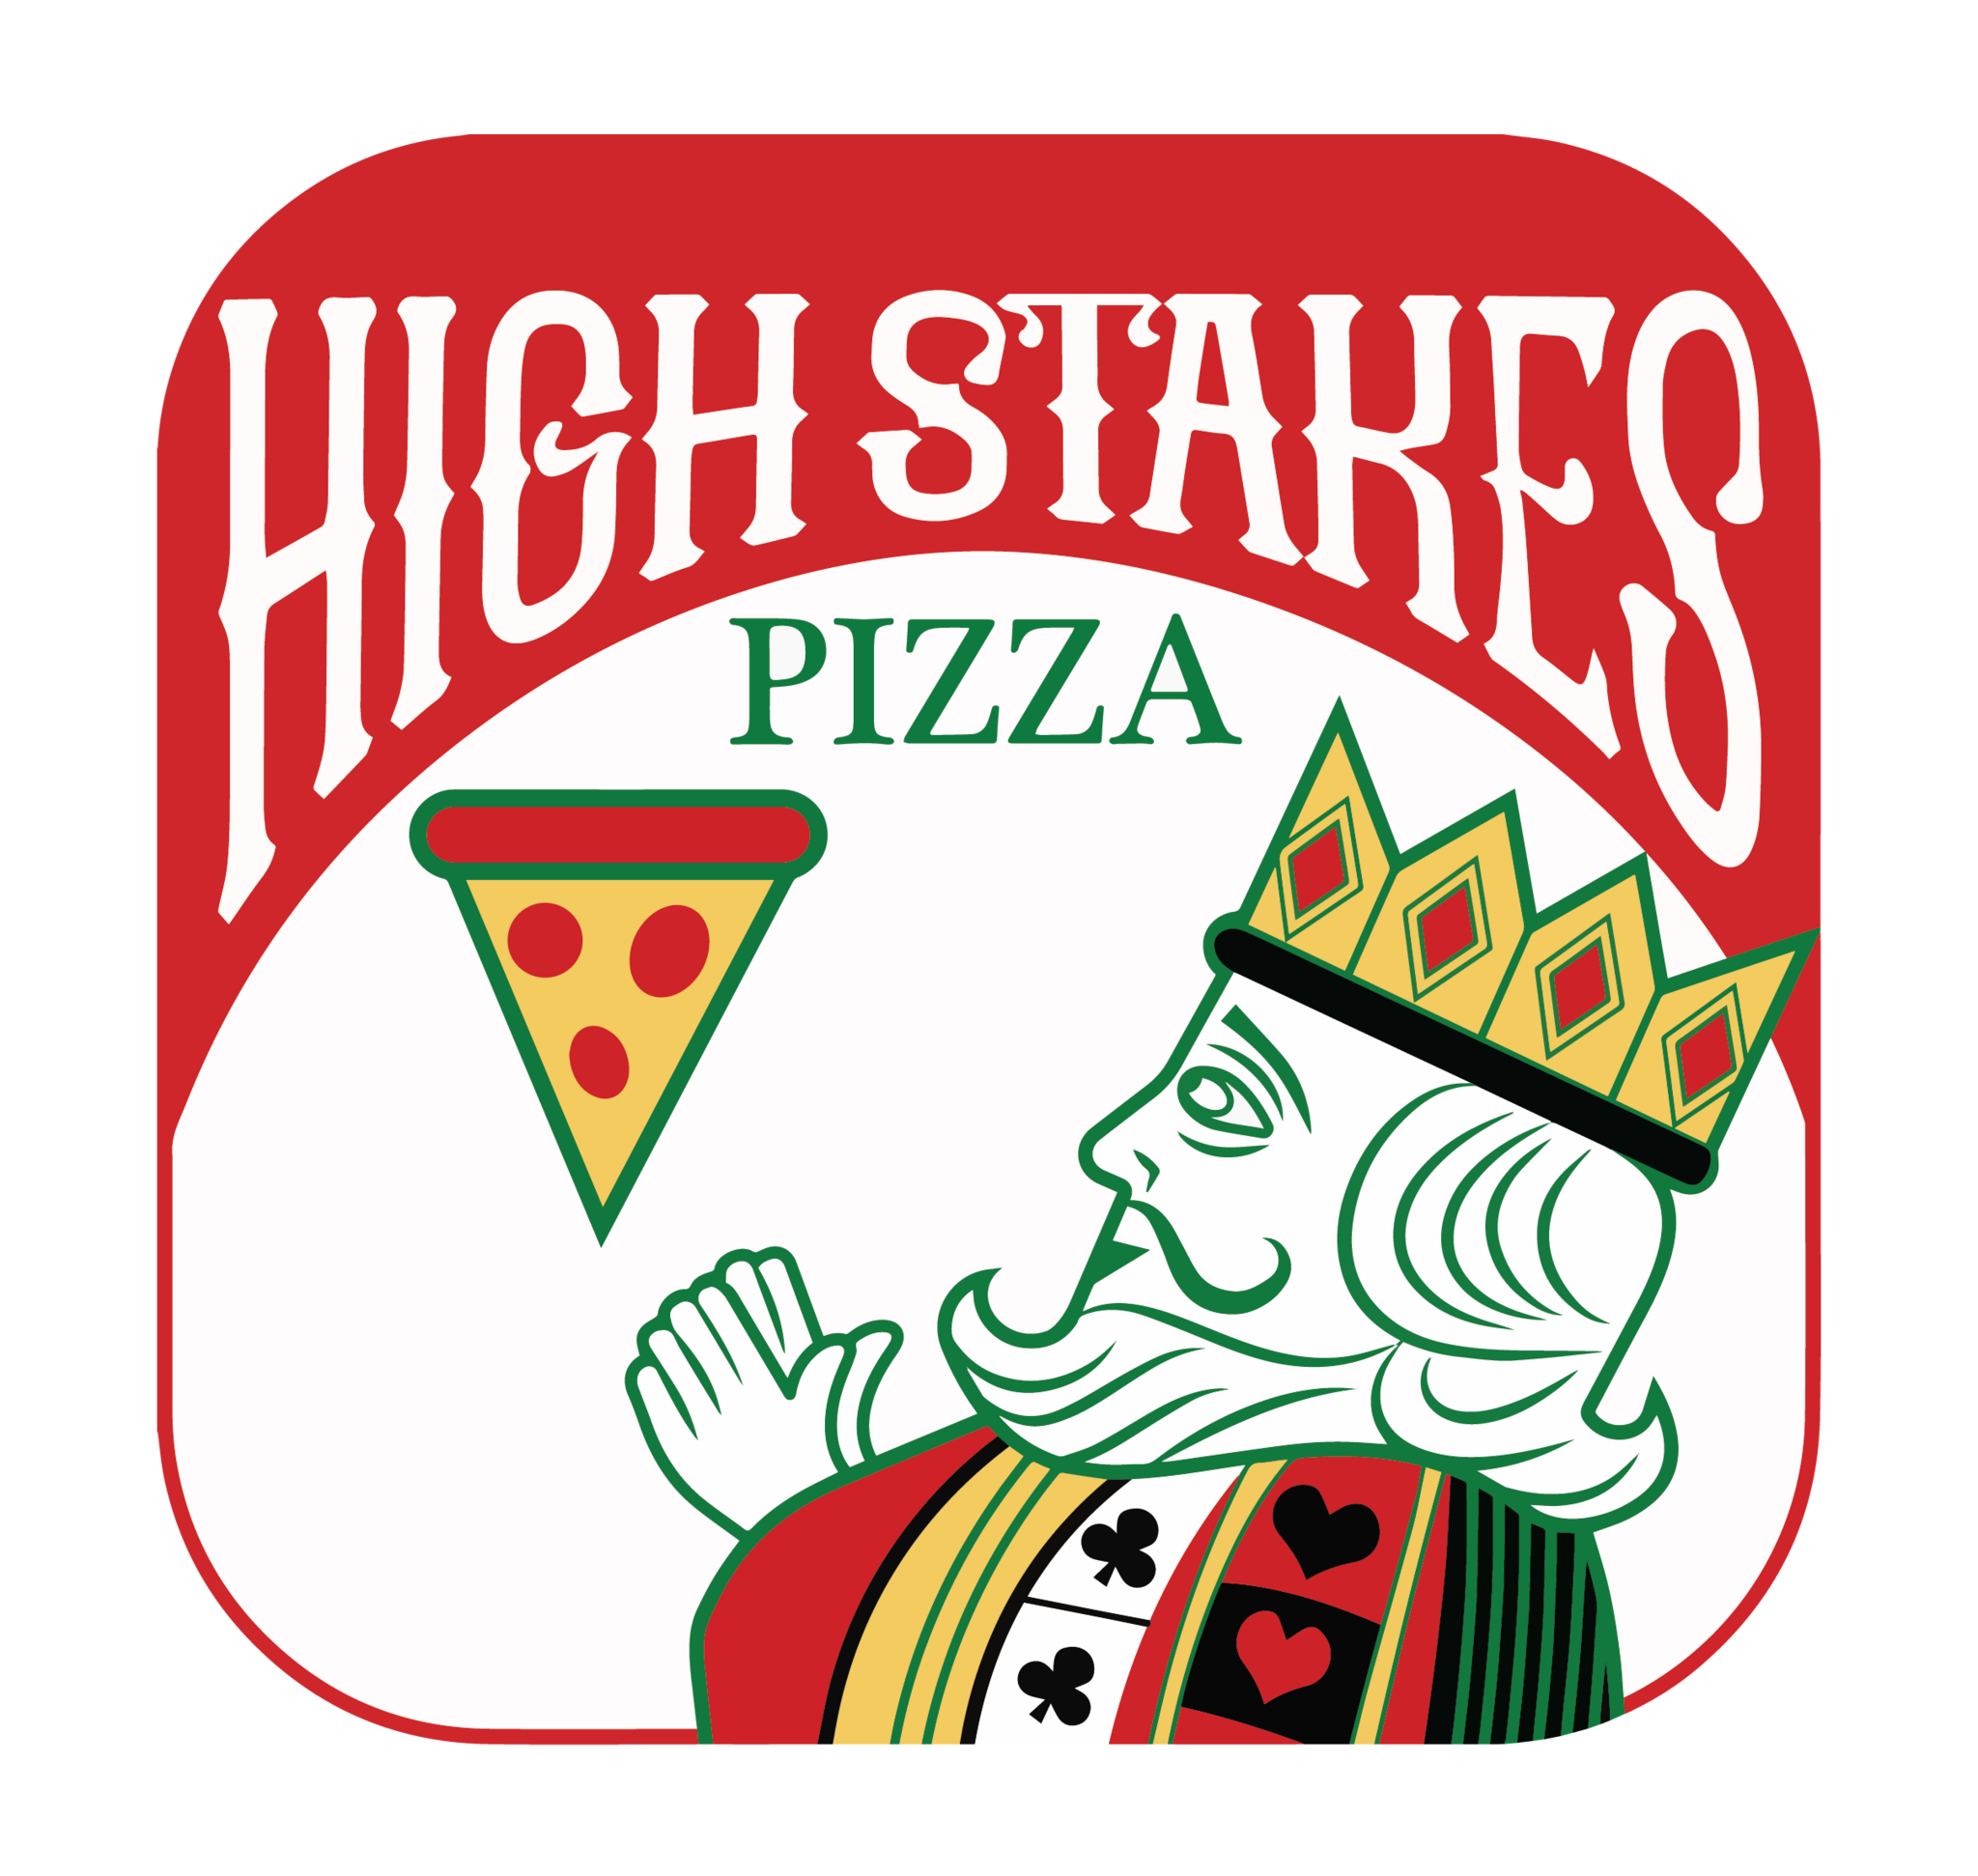 High Stakes Pizza - Mesa, AZ - Nextdoor